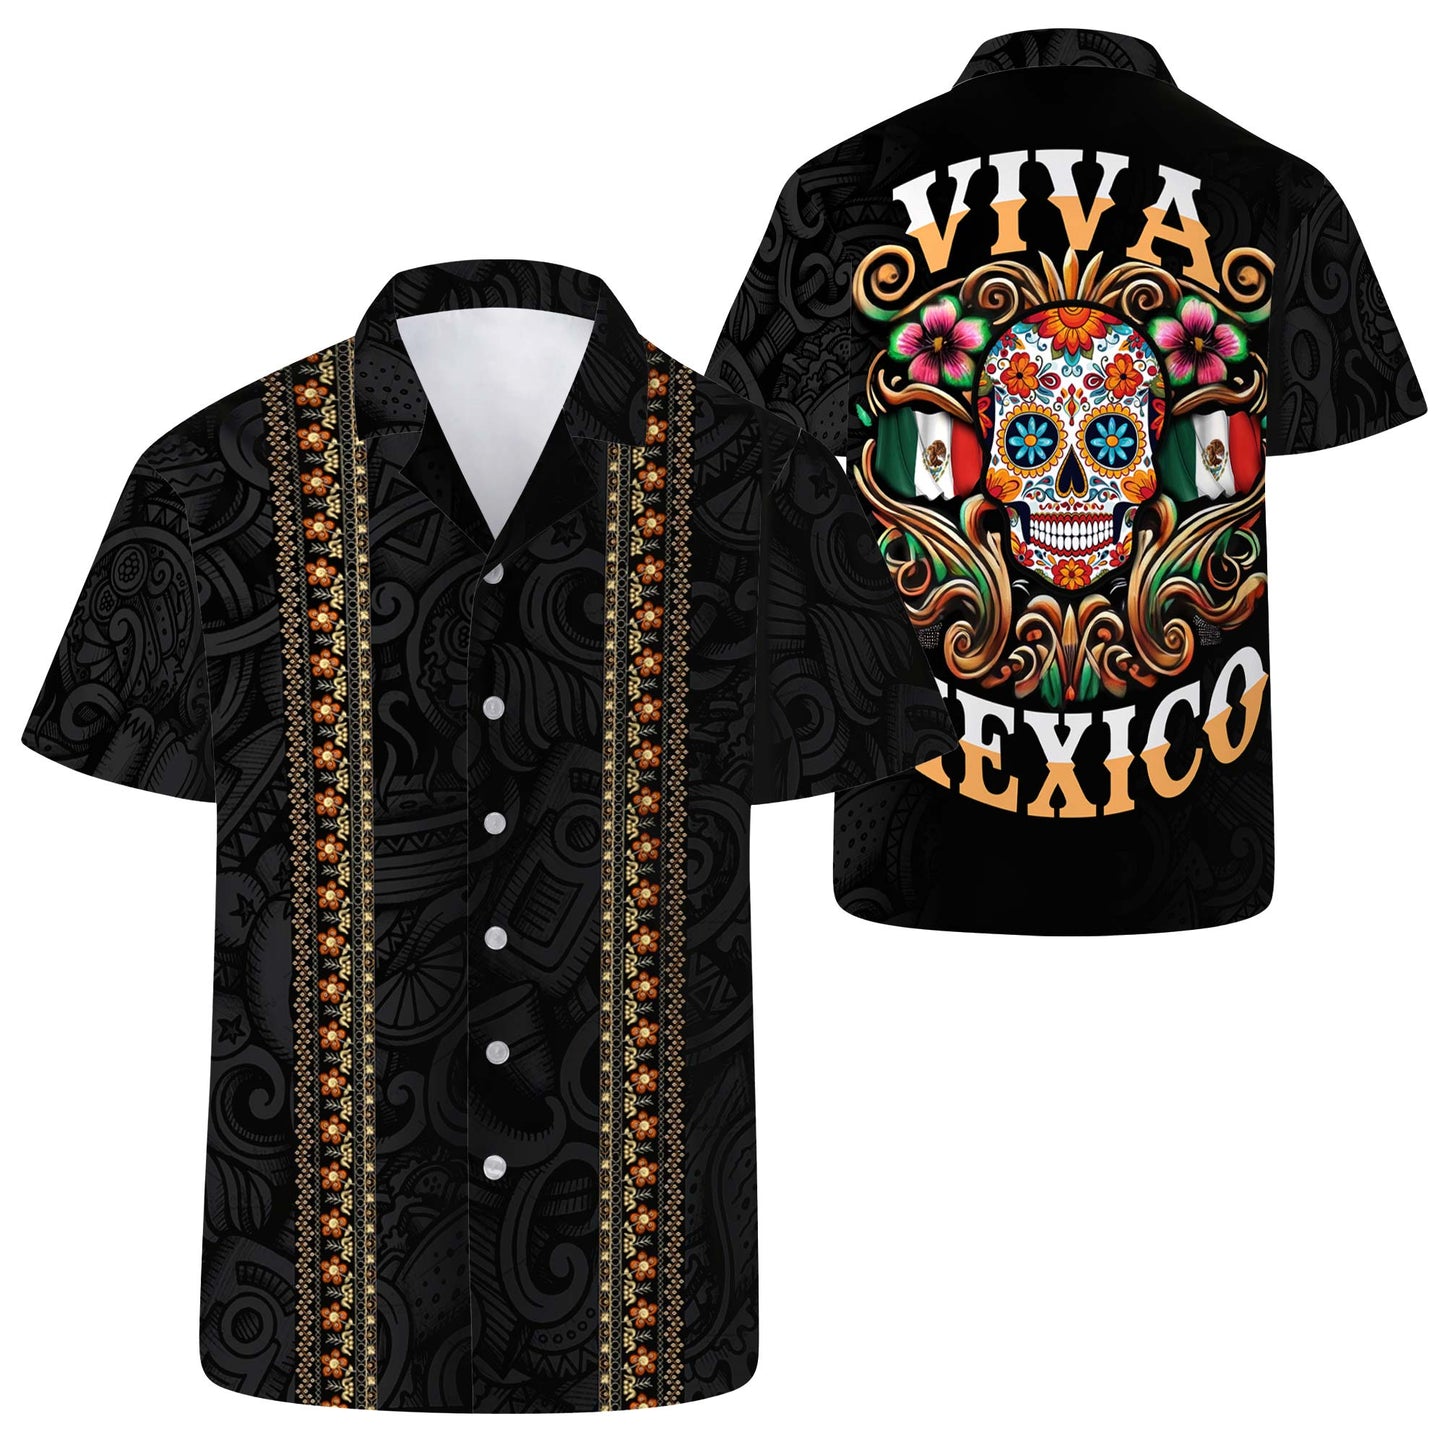 Viva Mexico - Personalized Unisex Hawaiian Shirt - HW_MX45